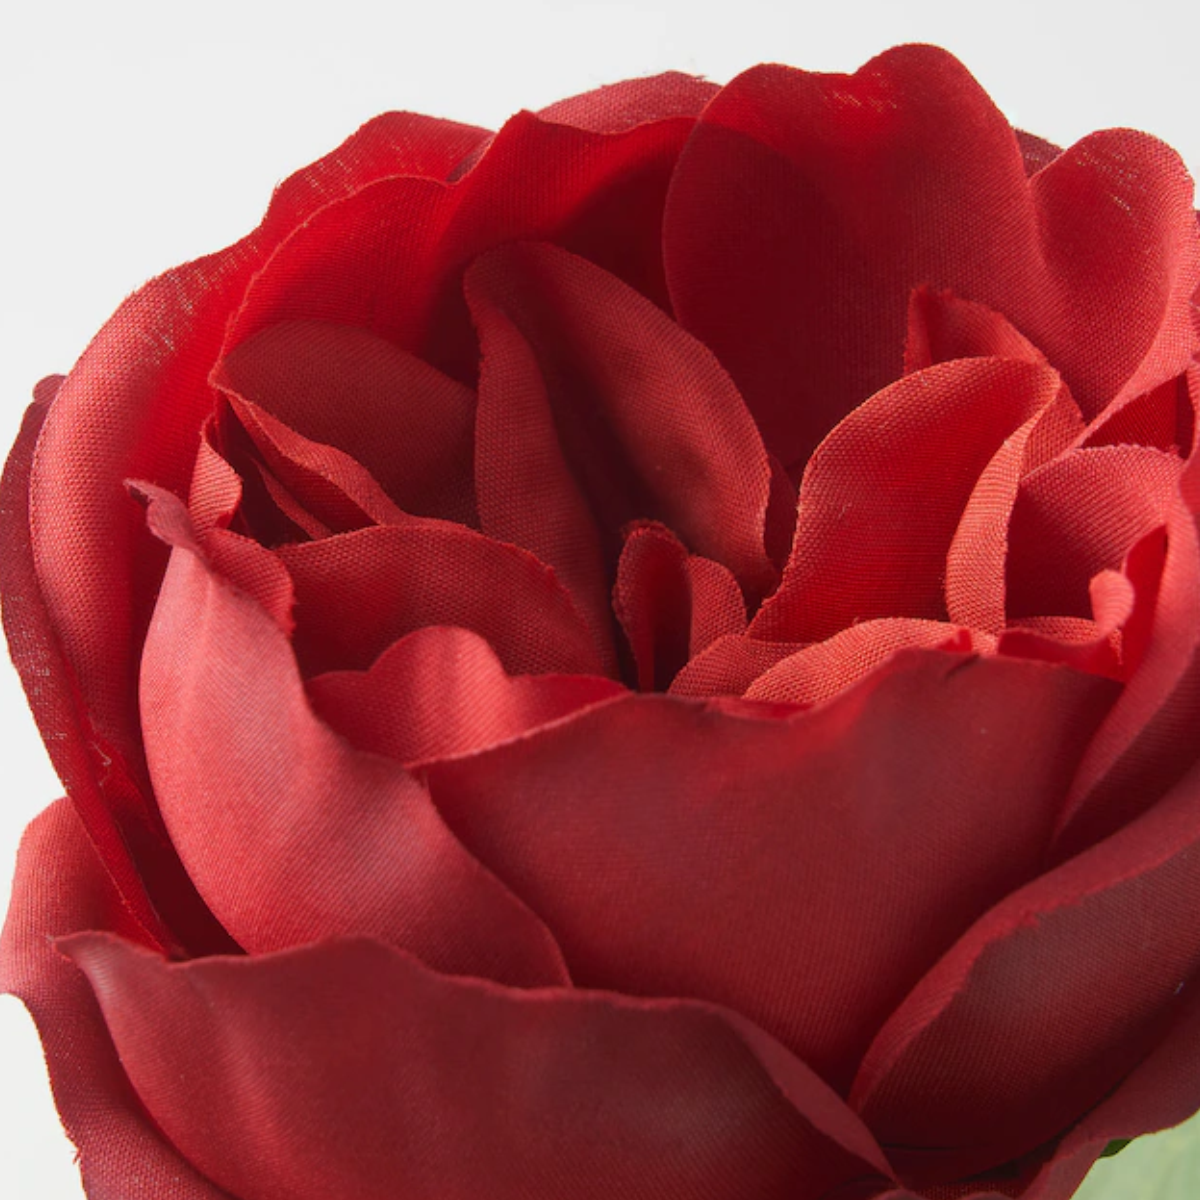 SMYCKA 52cm Vještački cvijet, unutra/spolja/ruža crvena